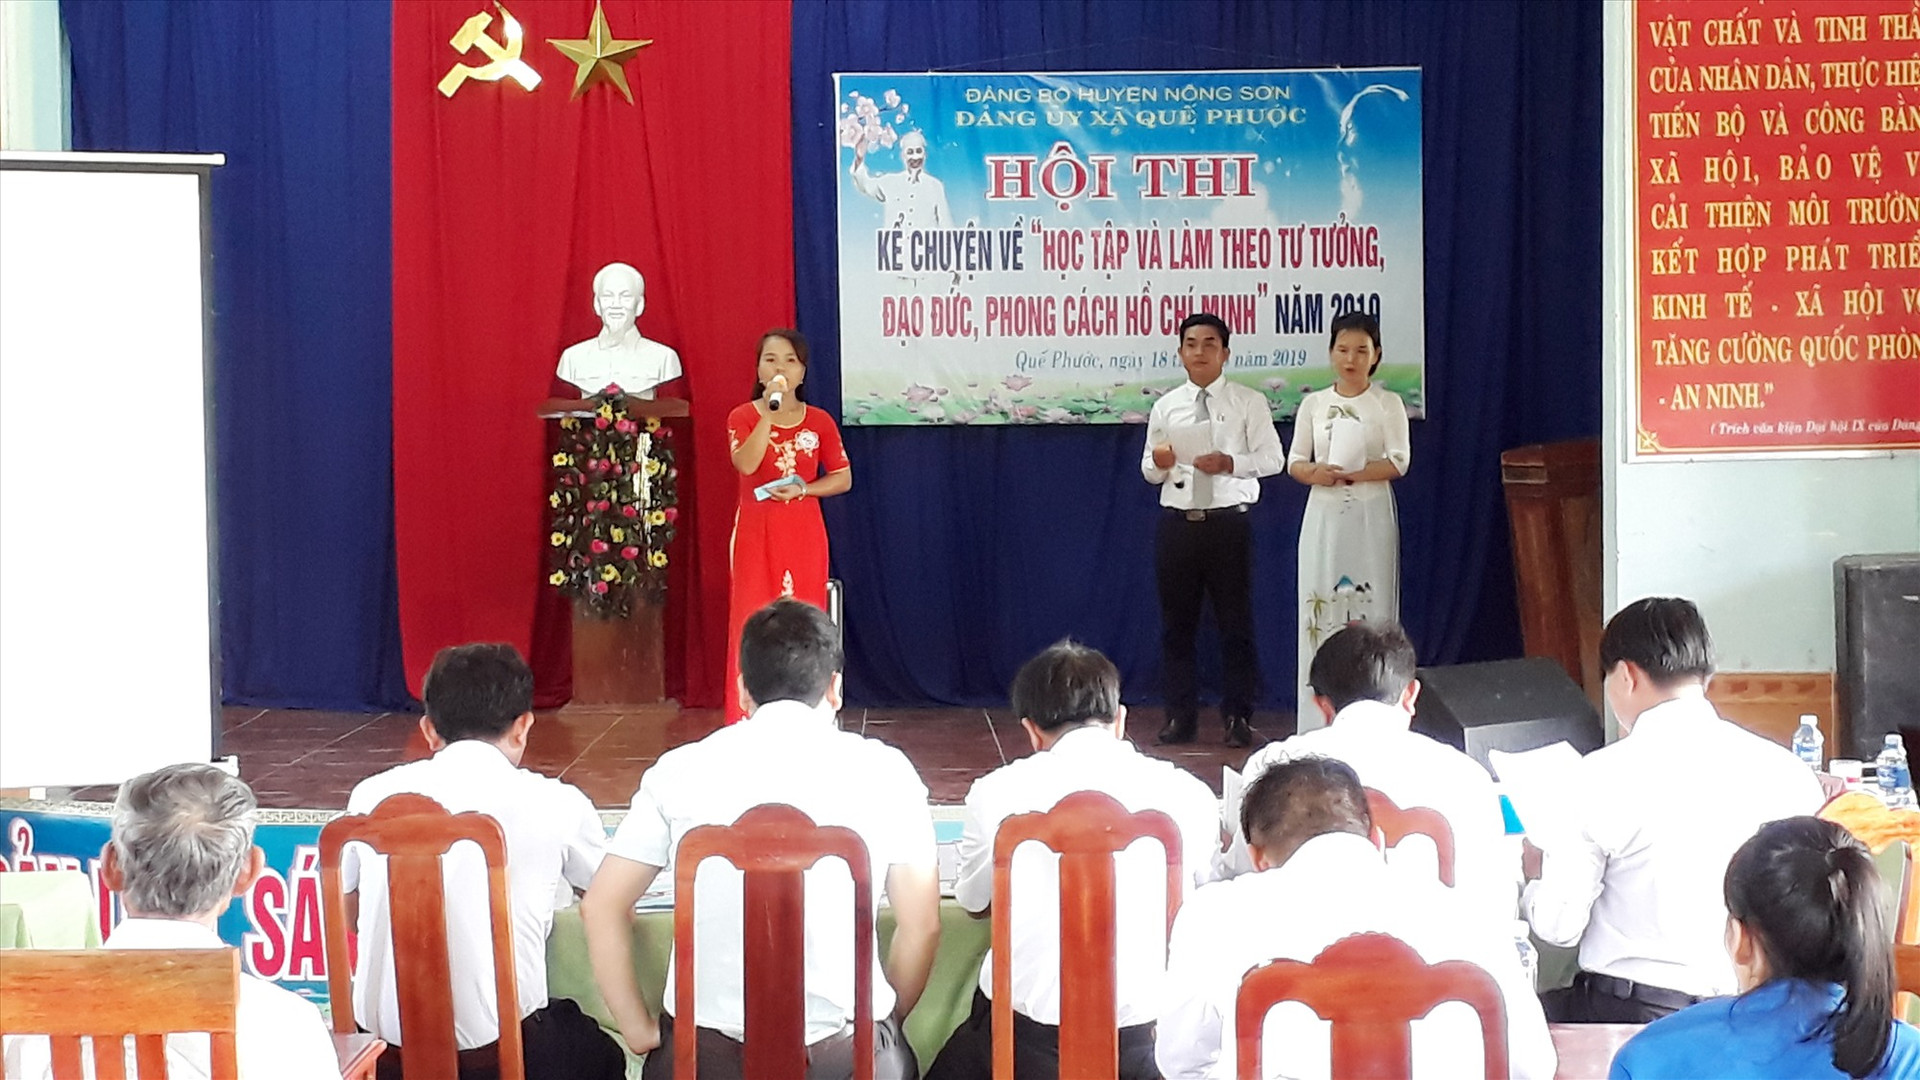 Hội thi kể chuyện Học tập và làm theo tư tưởng, đạo đức, phong cách Hồ Chí Minh ở xã Quế Phước. Ảnh: HOÀNG LIÊN